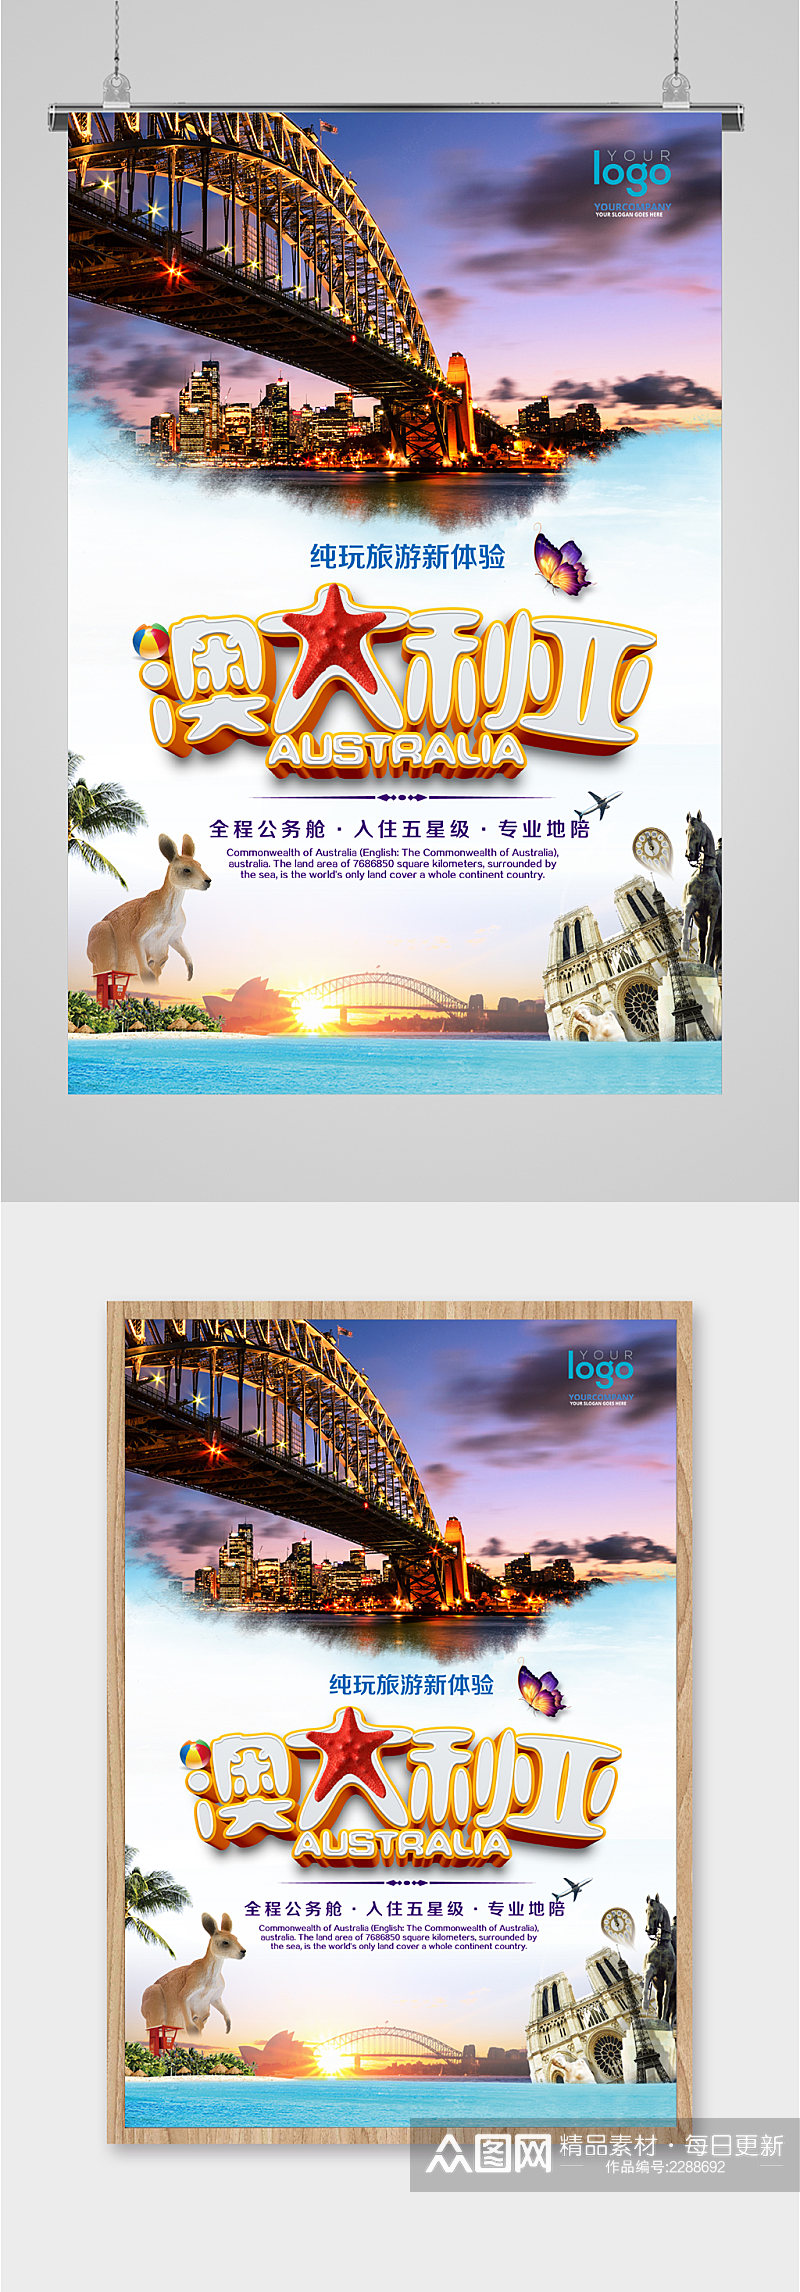 澳大利亚异国旅游海报素材